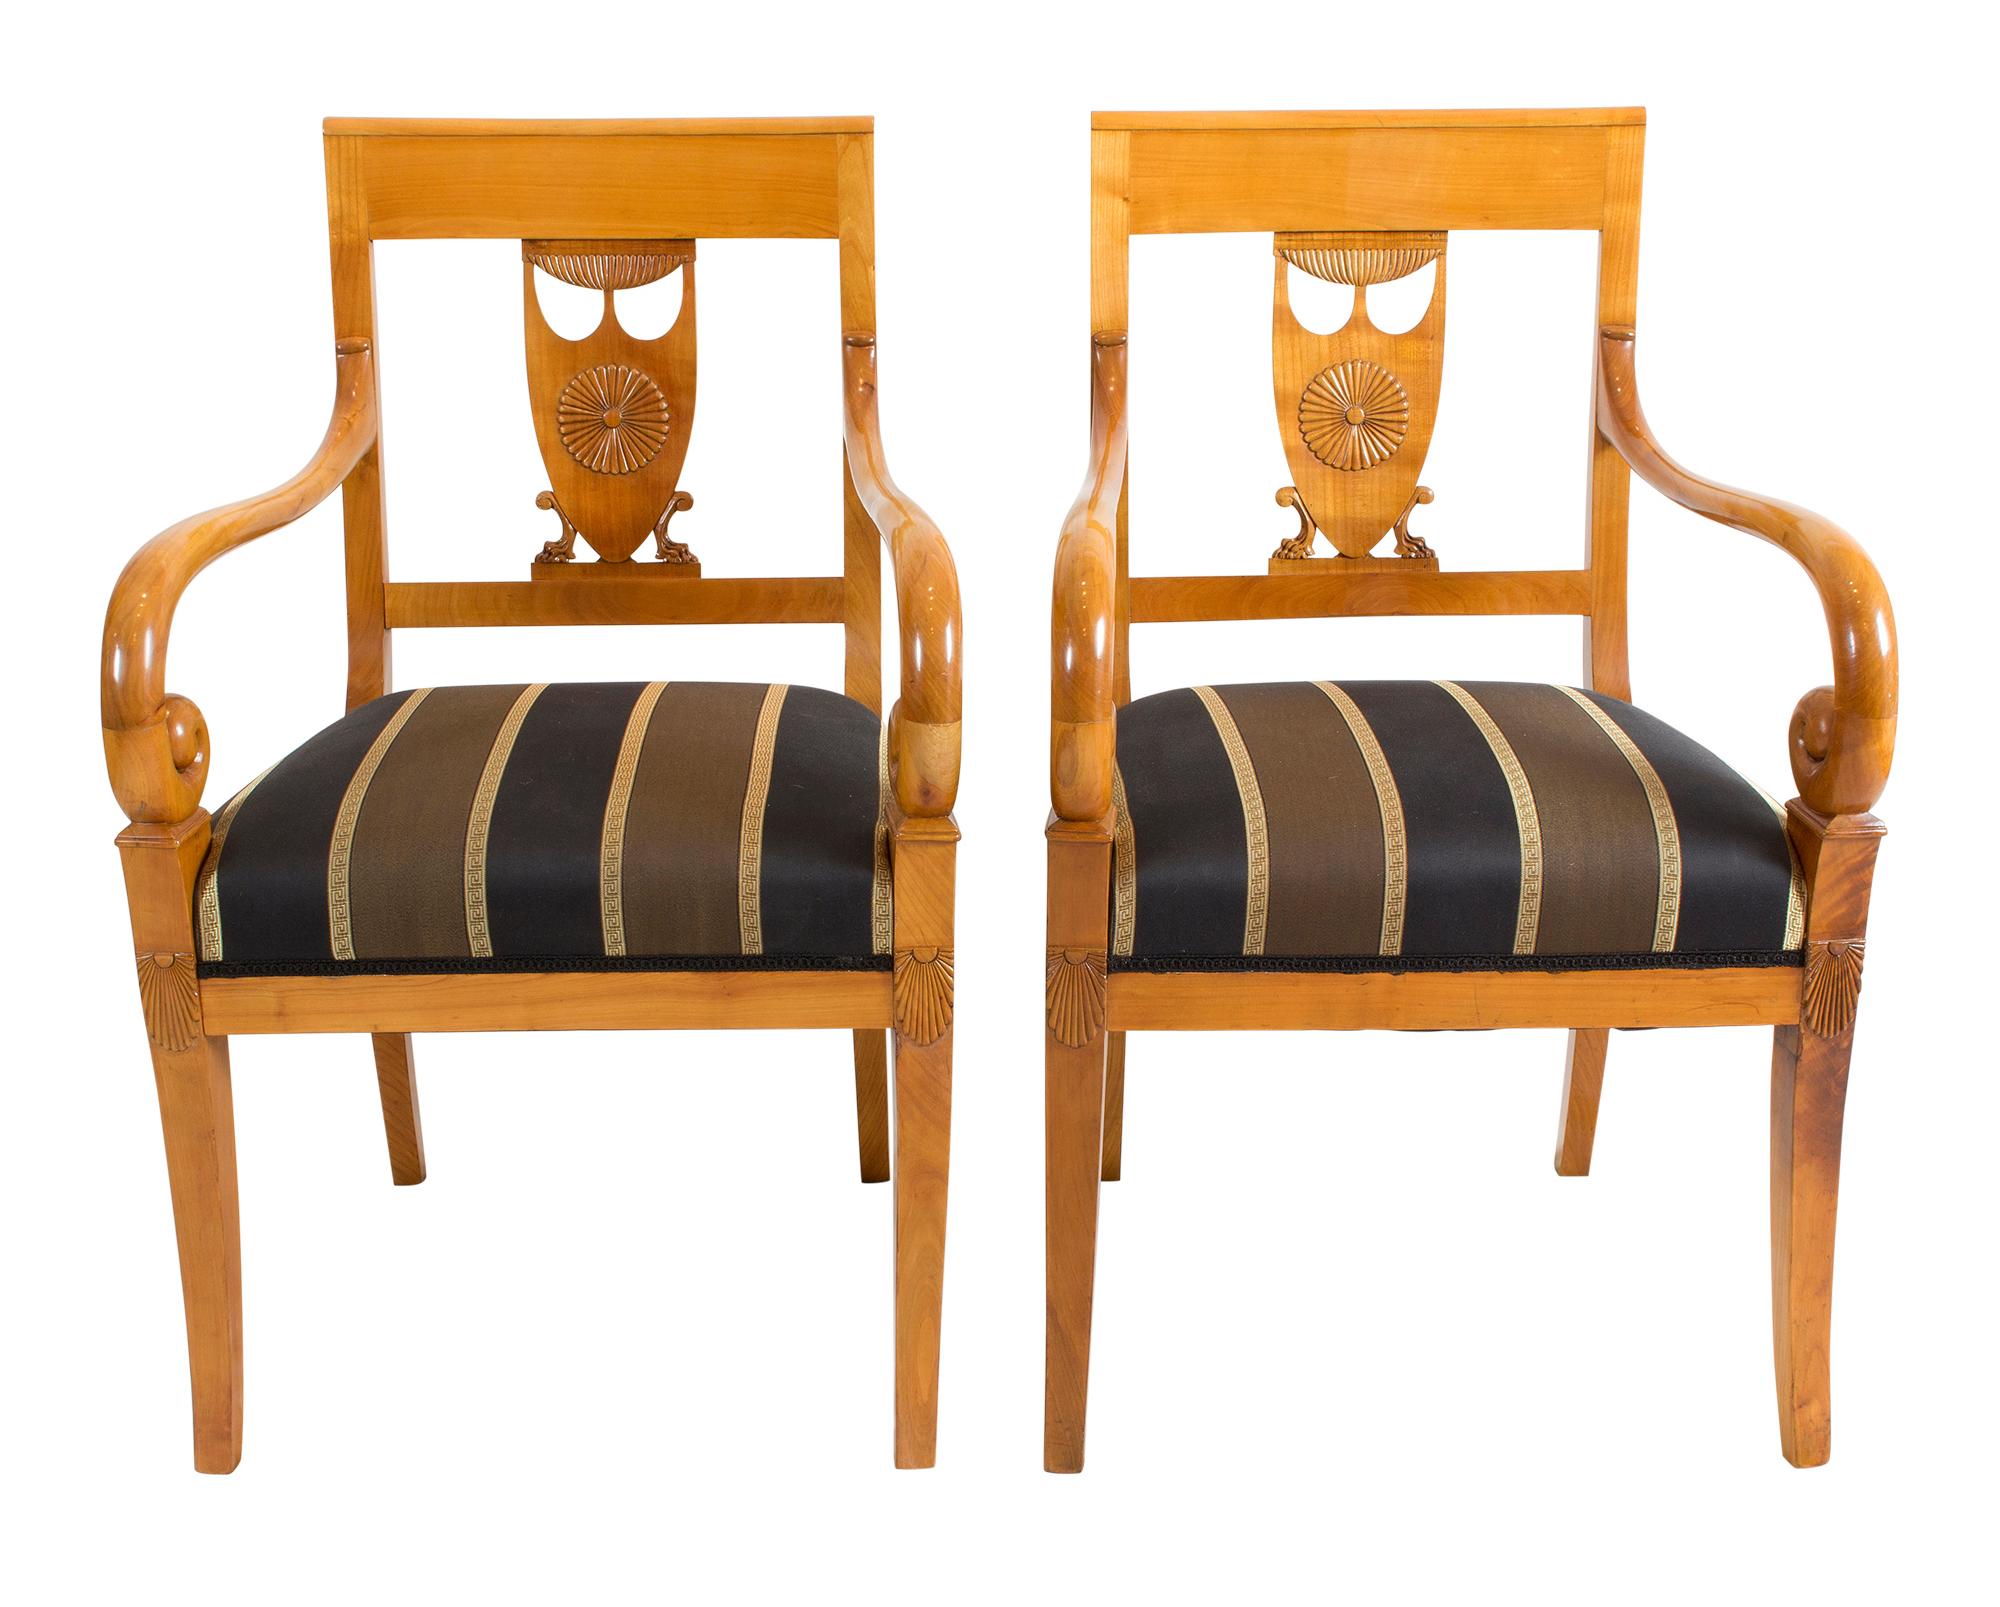 Schöne einzigartige Sitzgruppe bestehend aus 2 Sesseln und 6 Stühlen. Die Gruppe stammt aus der Zeit des Empire zu Beginn des 19. Jahrhunderts (ca. 1800-1810). Alle Stühle sind aus massivem Kirschholz gefertigt. Die Gruppe befindet sich in einem